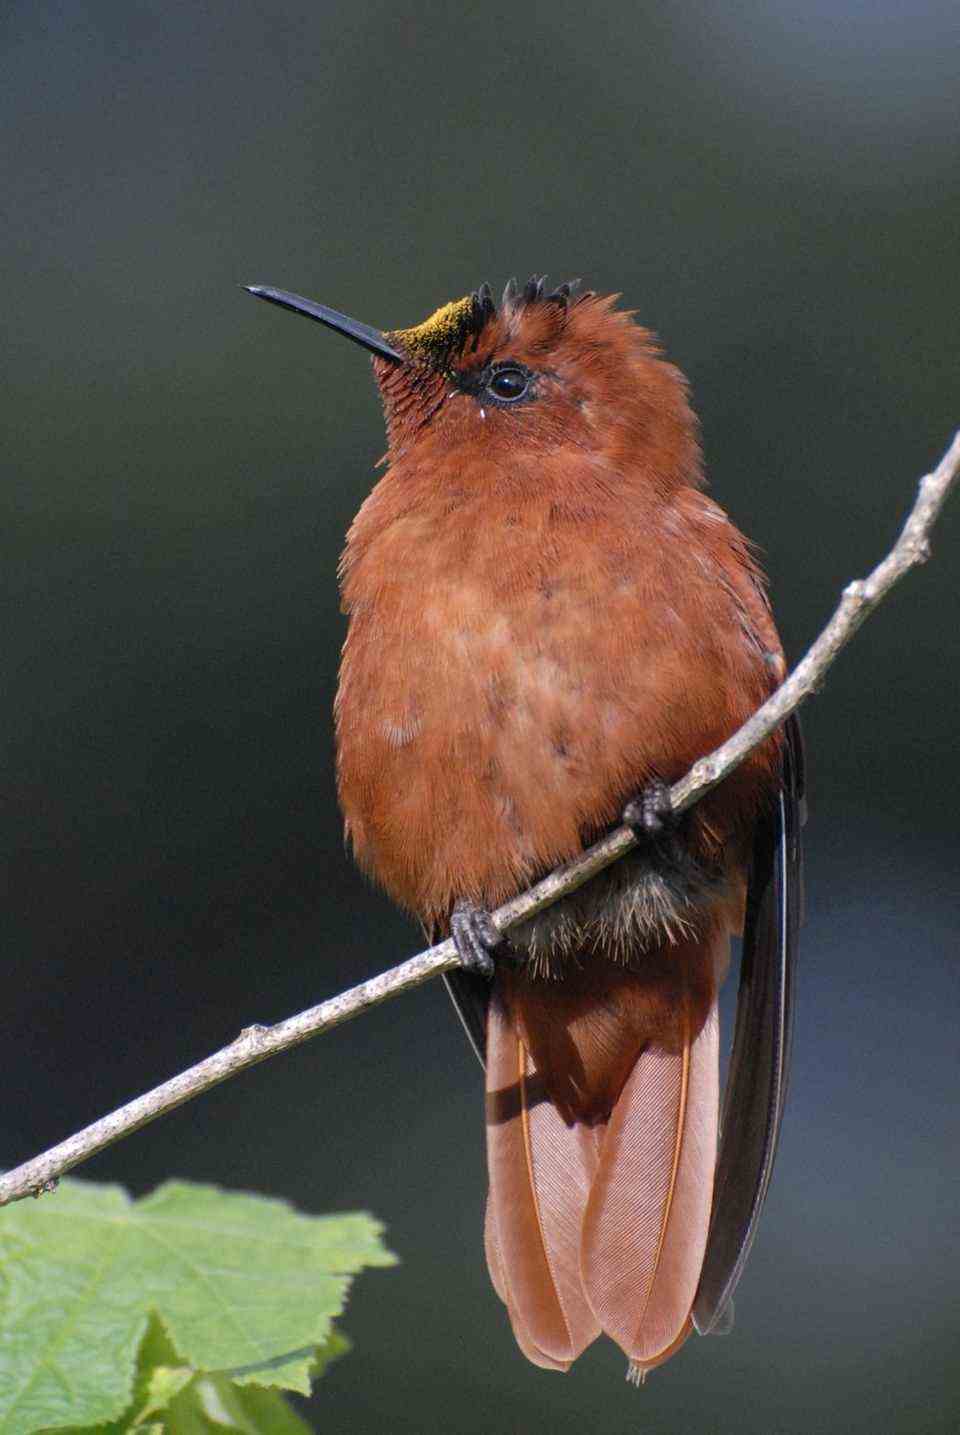 The Juan Fernandez hummingbird is critically endangered